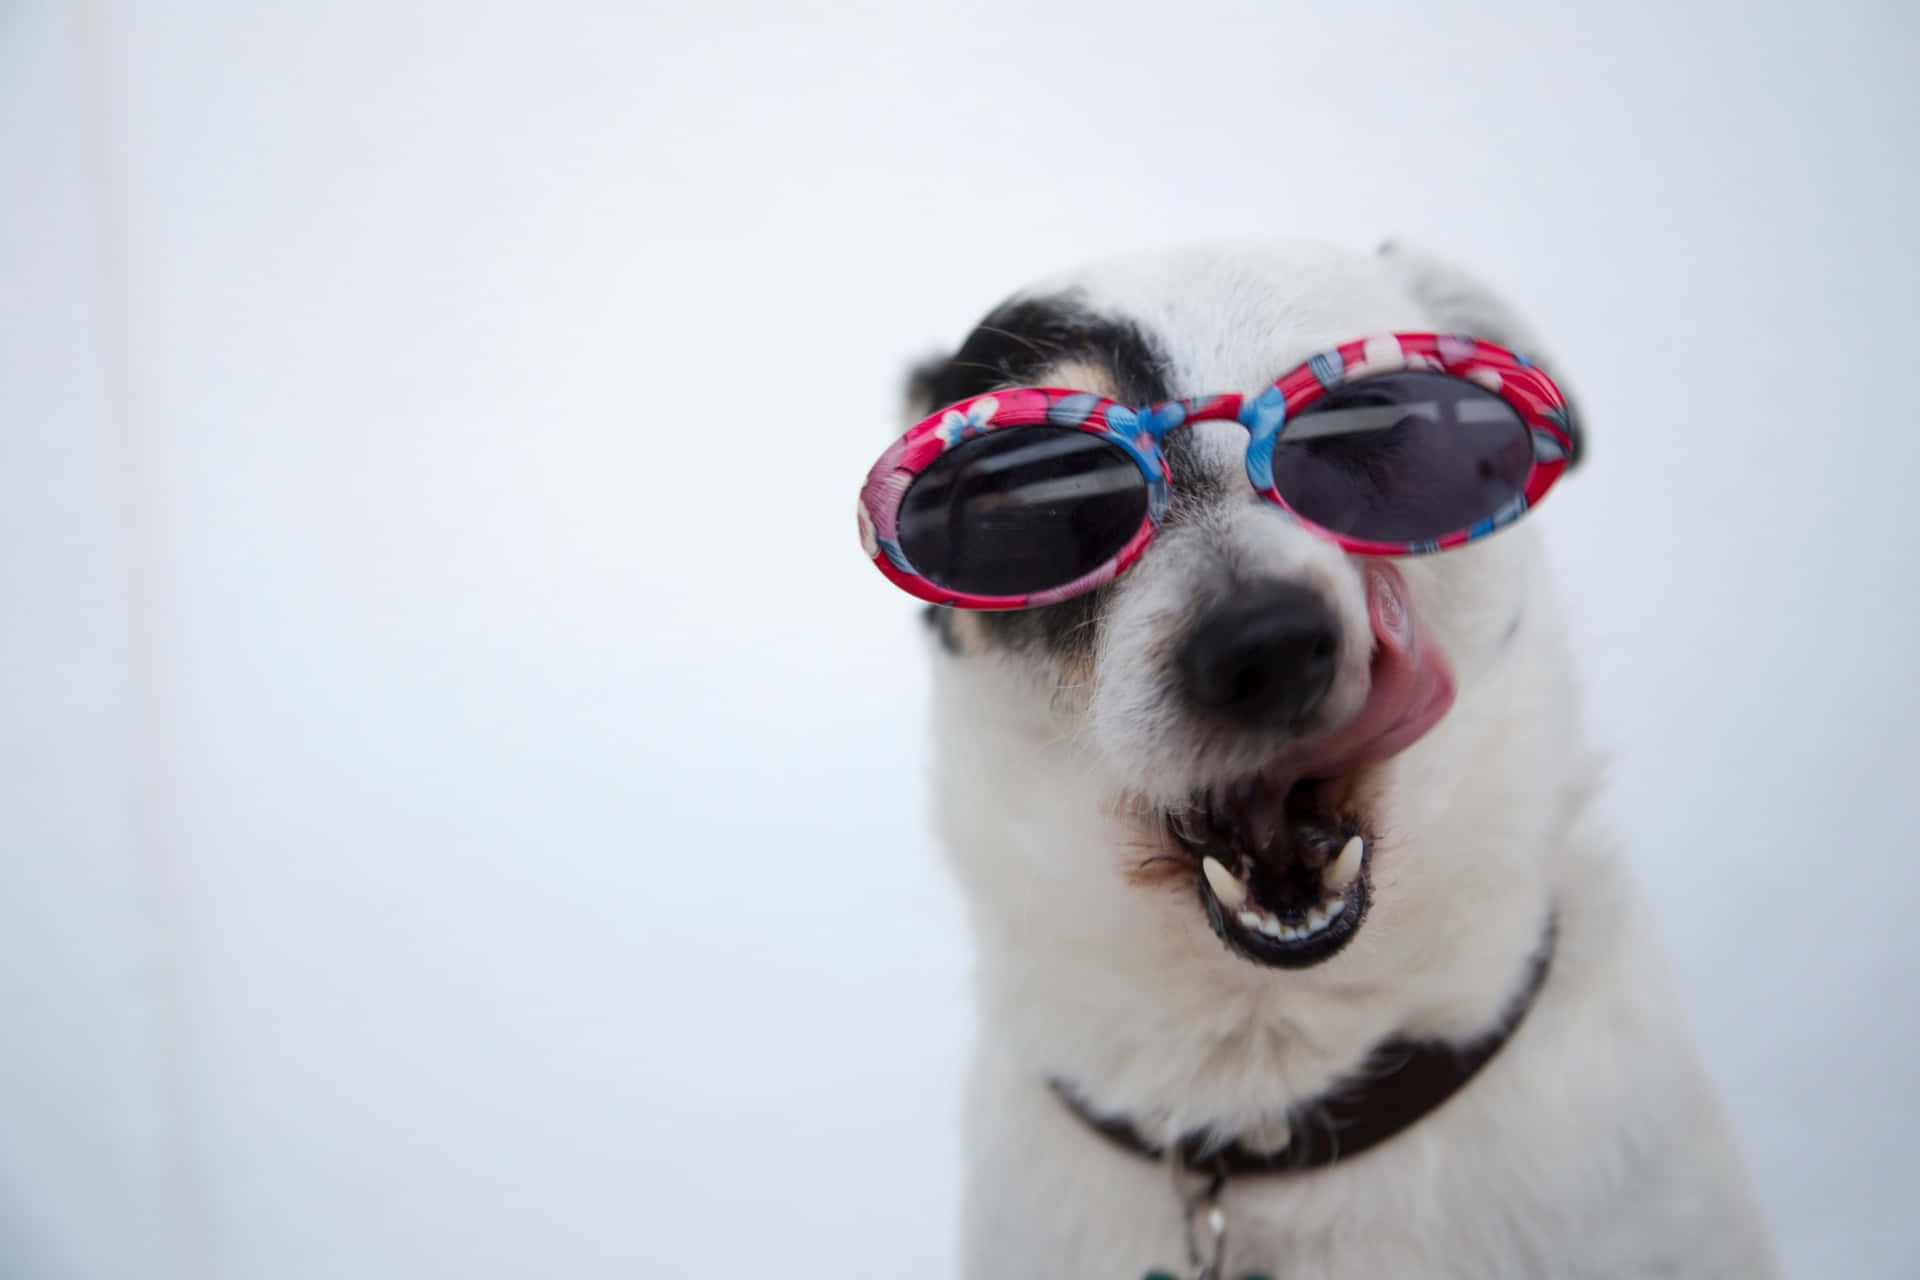 Lustigesbild Von Einem Hund Mit Sonnenbrille